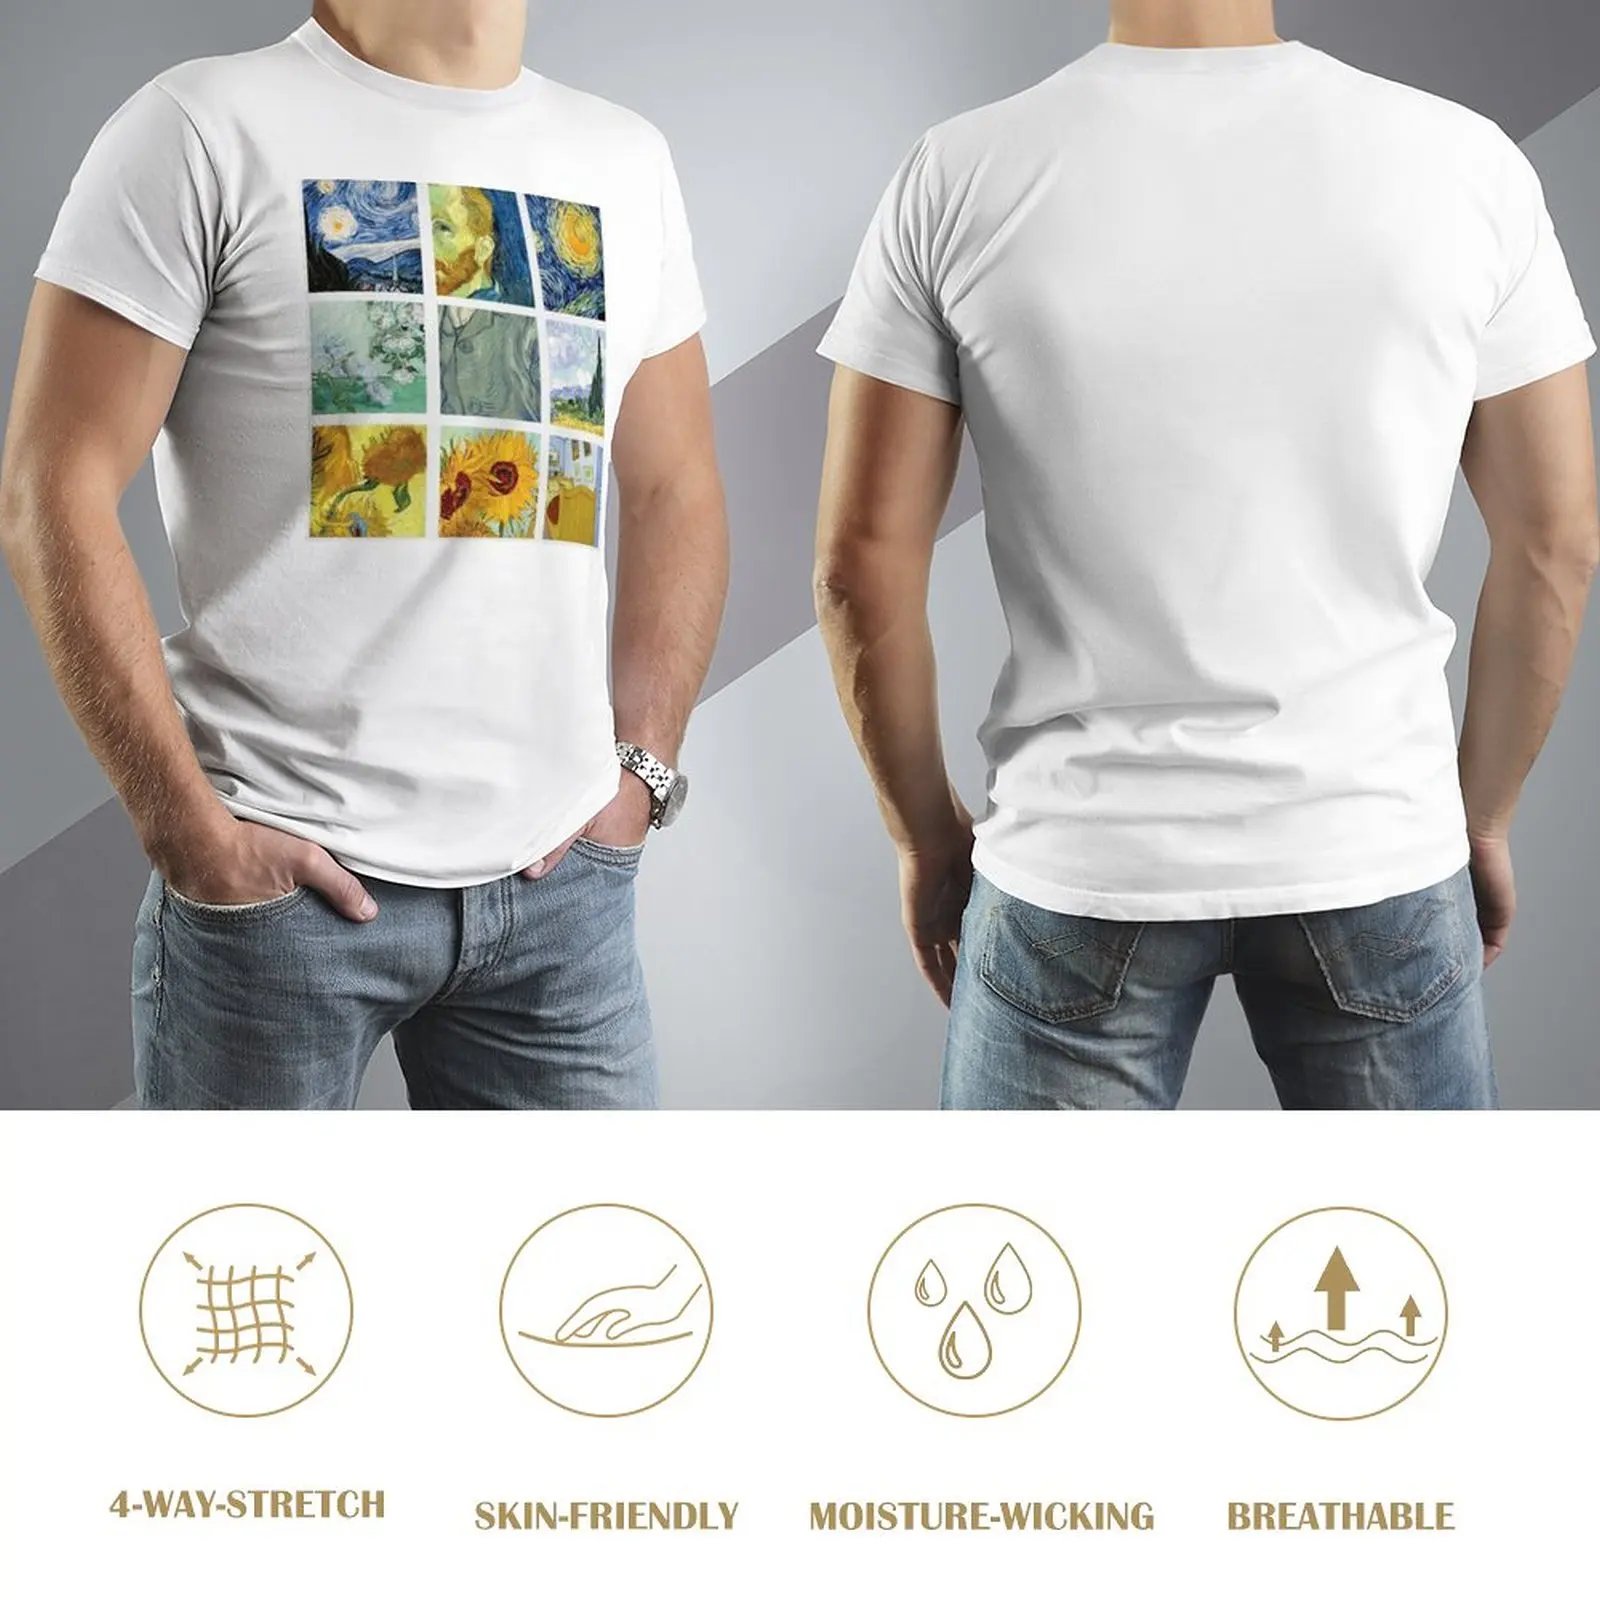 Футболка с рисунком Винсента Ван Гога в сетку, забавная футболка, корейская мода, мужские футболки большого и высокого роста Изображение 2